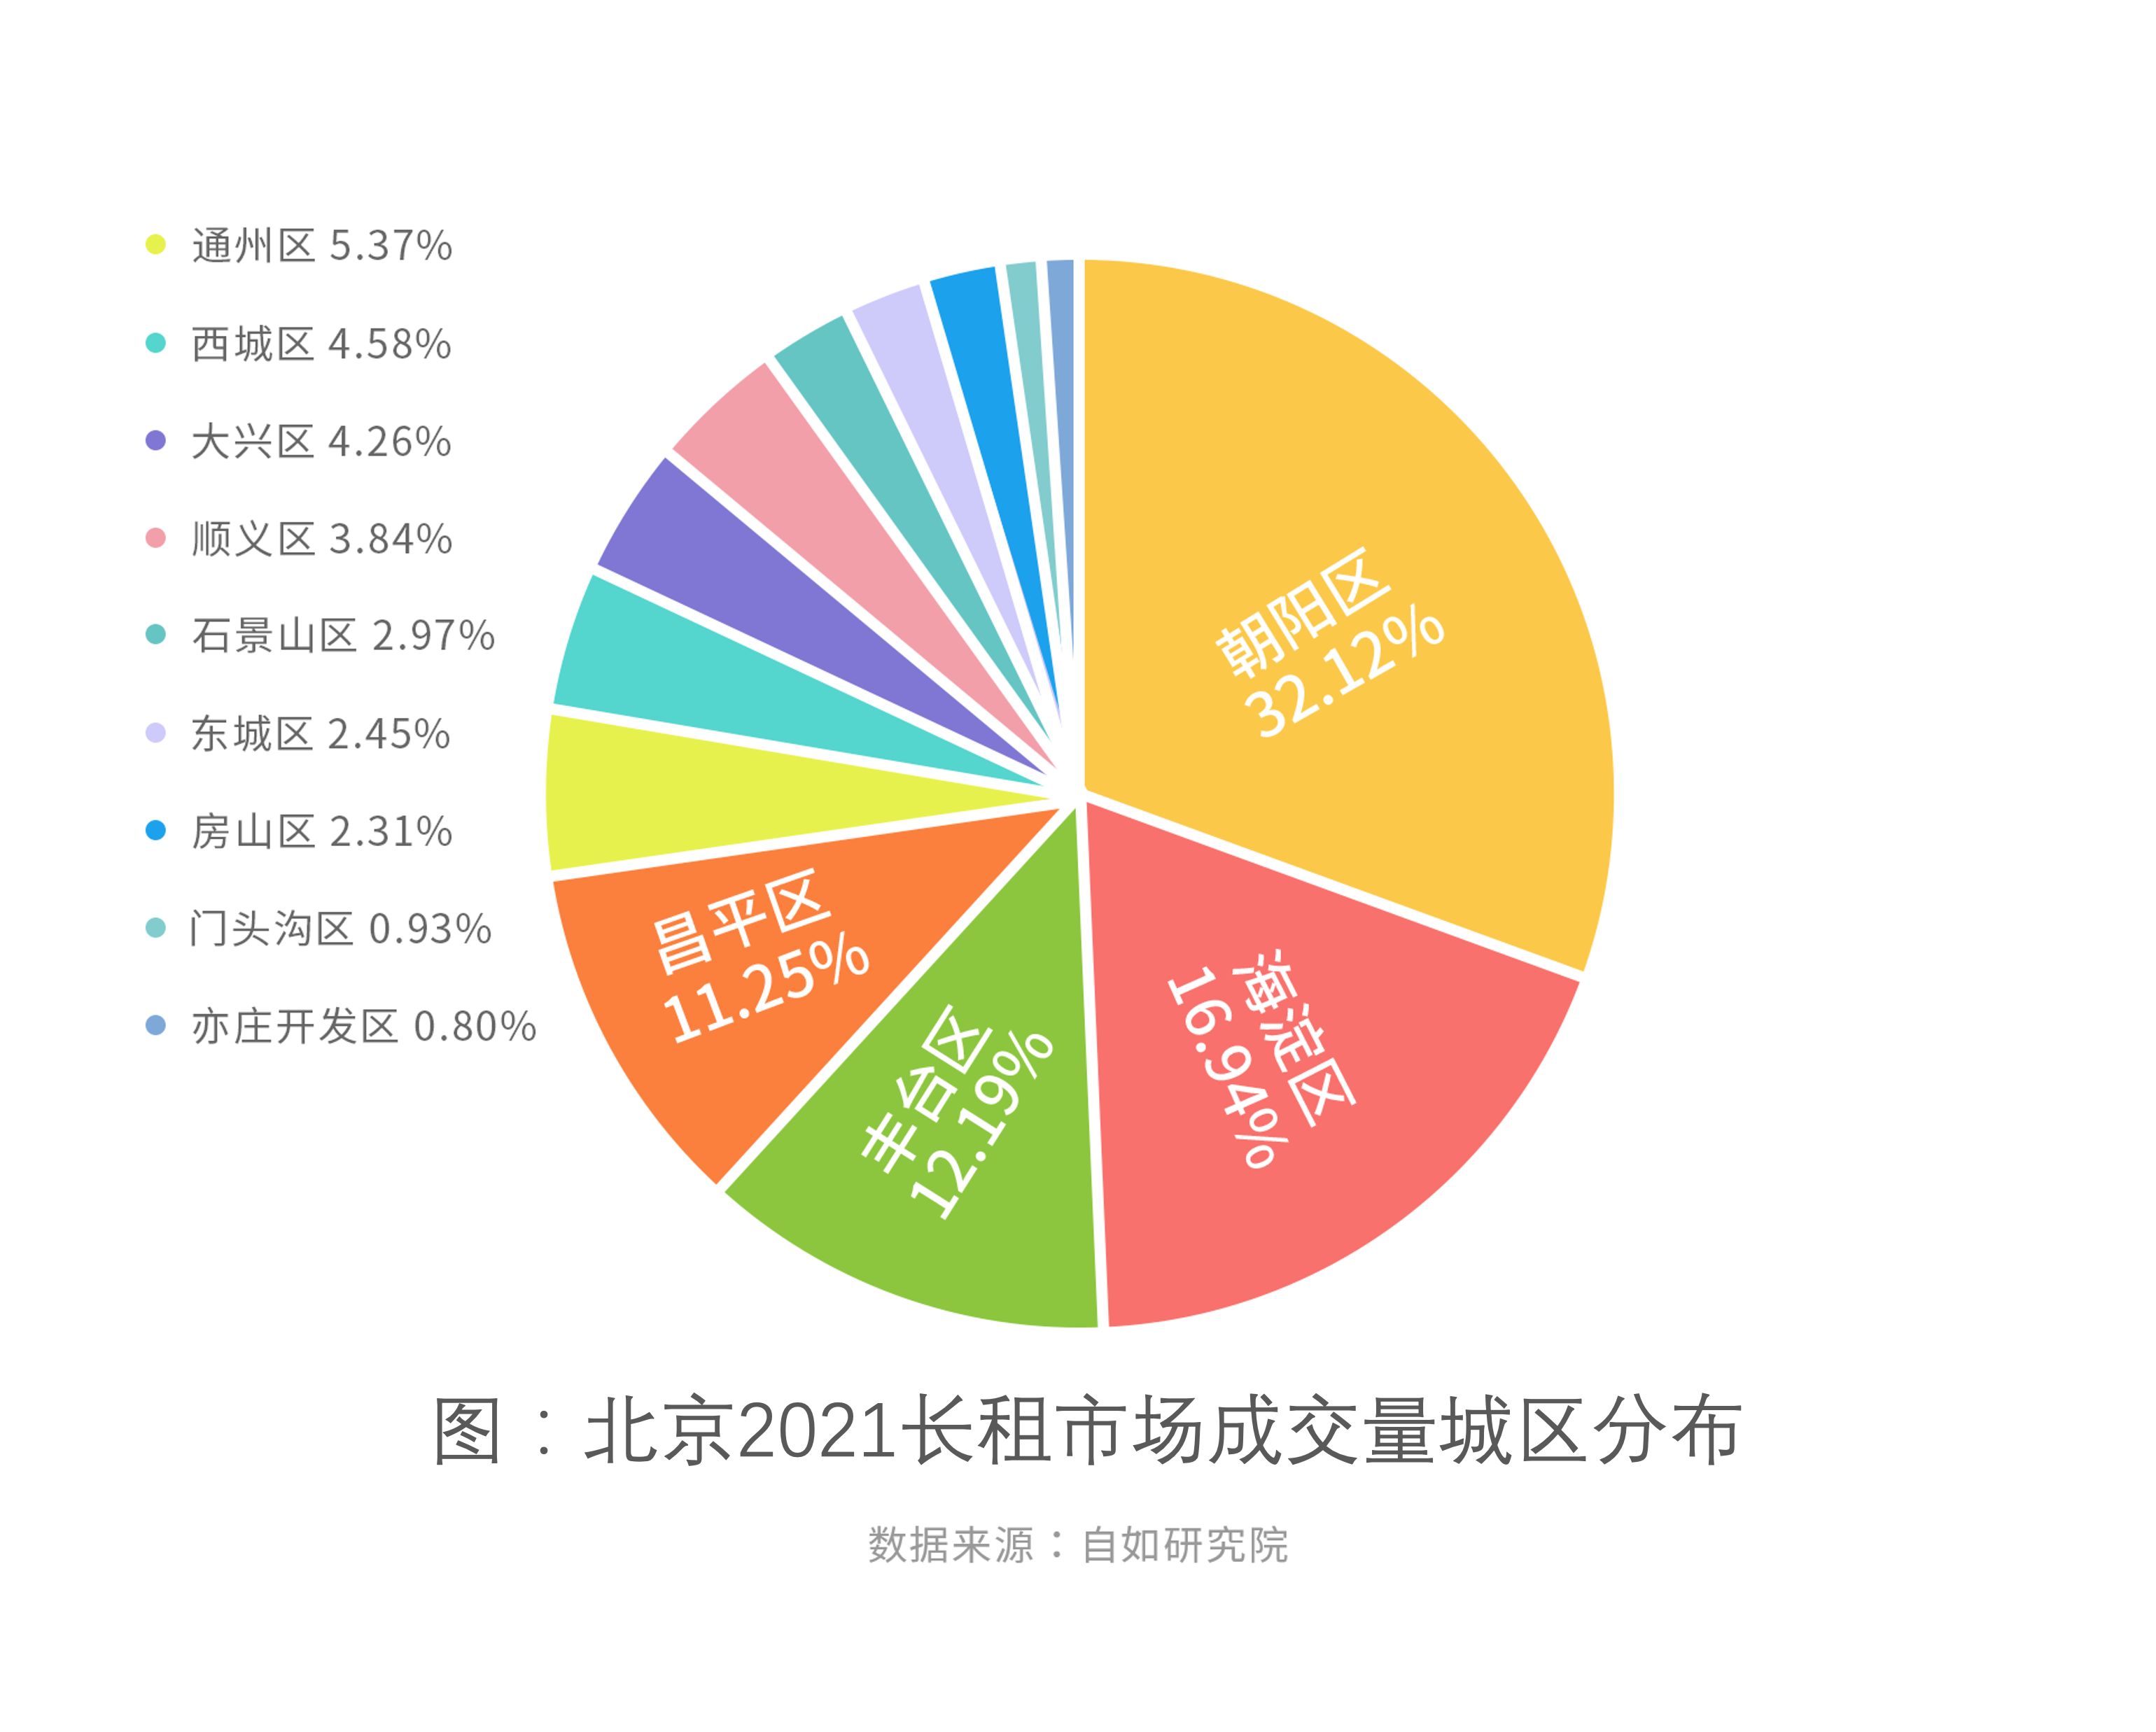 机构:北京三成租房人在朝阳,长租机构房源租金月均波动不超2%